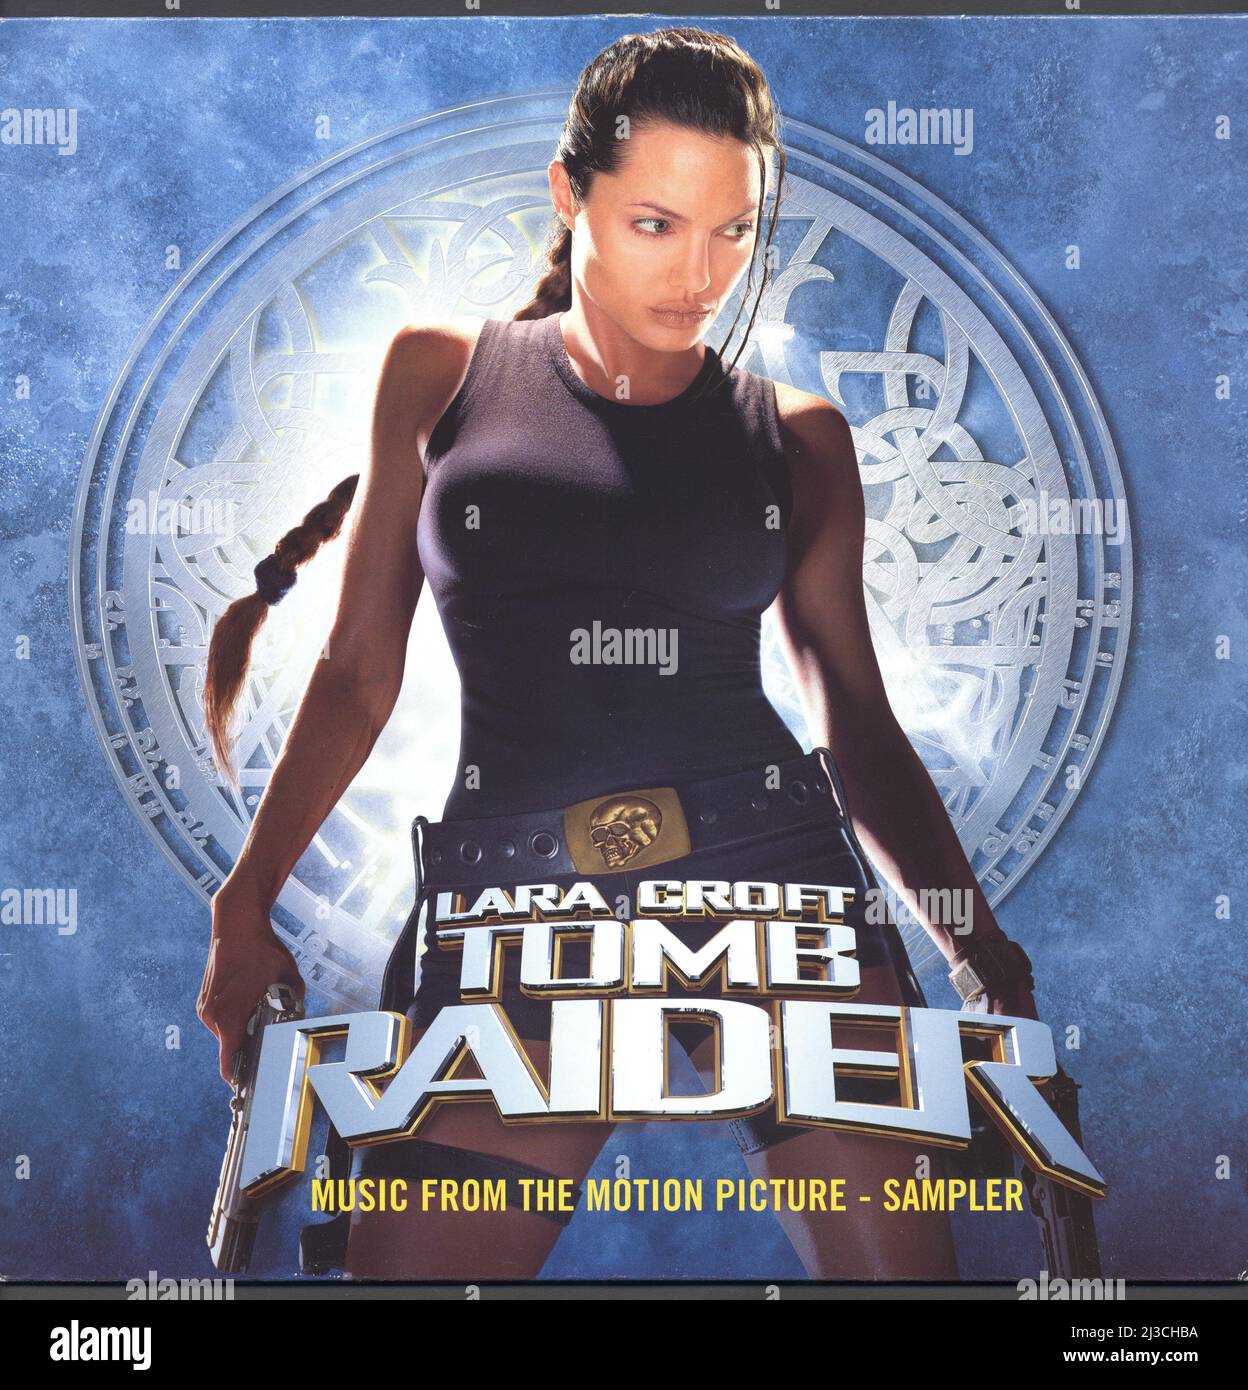 Verschiedene – Tomb Raider - Musik Aus Dem Film - Sampler. Diese 12-Zoll-Platte war ein zwei-Track-Promo-Sampler aus dem Soundtrack-Album. Elektra Records 2001, das 2001 veröffentlicht wurde, um mit der Veröffentlichung des Films in Verbindung zu kommen, enthält diese 12' Sample-Tracks aus dem Filmmusik-Soundtrack und wurde als 12'-Single für Clubs veröffentlicht. Stockfoto